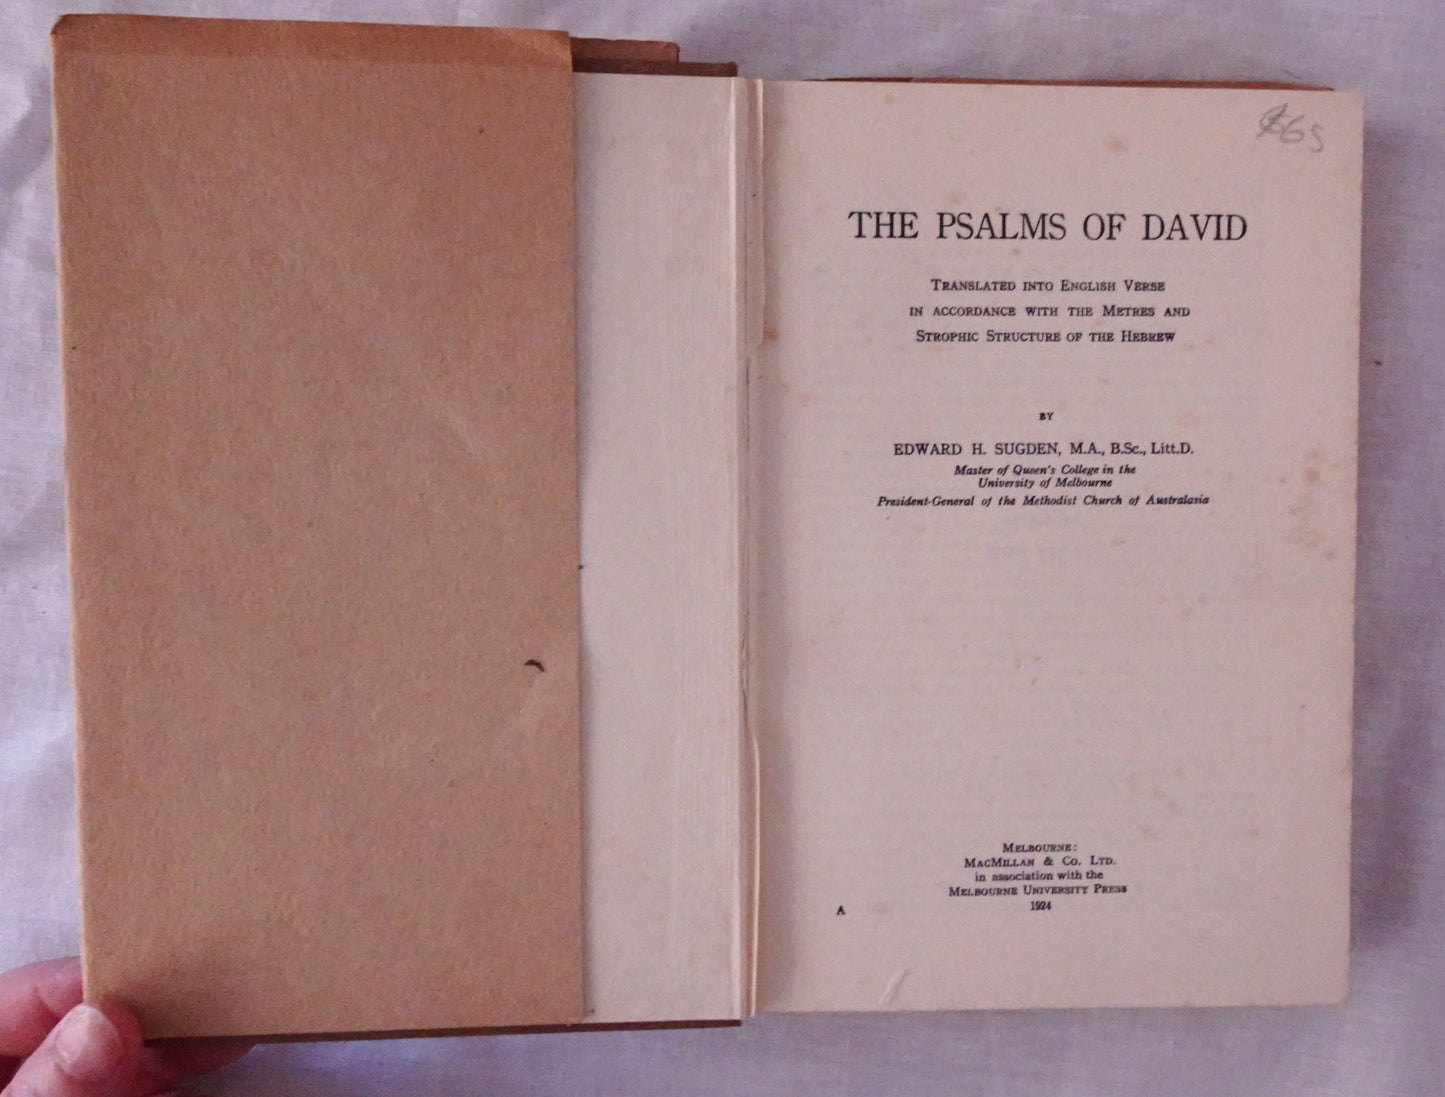 The Psalms of David by Edward H. Sugden